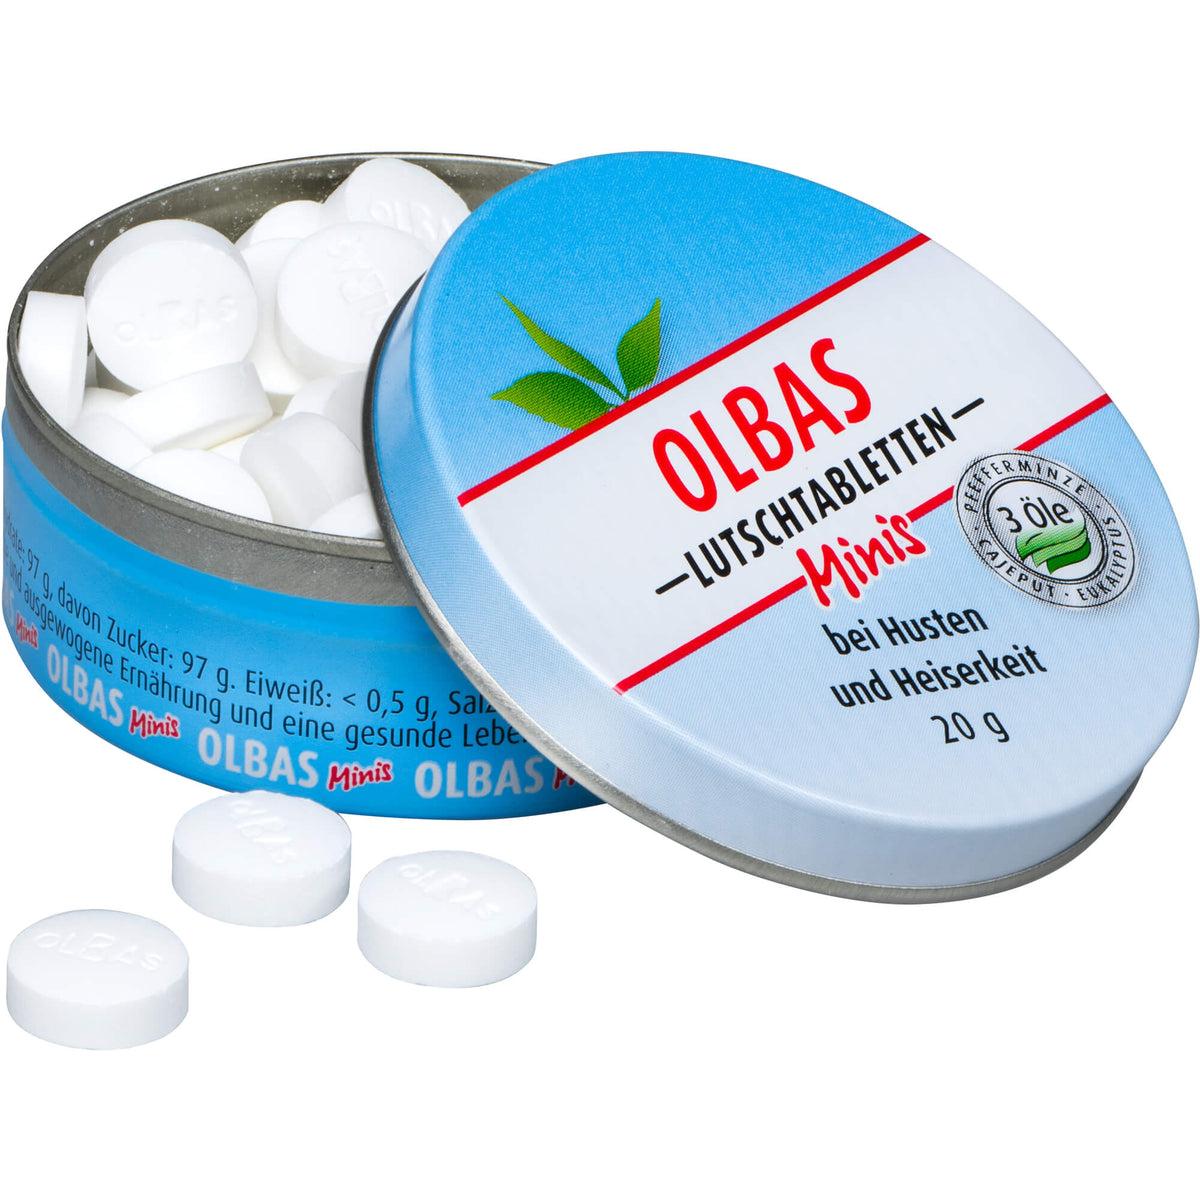 Product OLBAS Lutschtabletten Minis bei Husten und Heiserkeit, 20 g Tabletten — apobee - Die umweltfreundliche Apotheke image